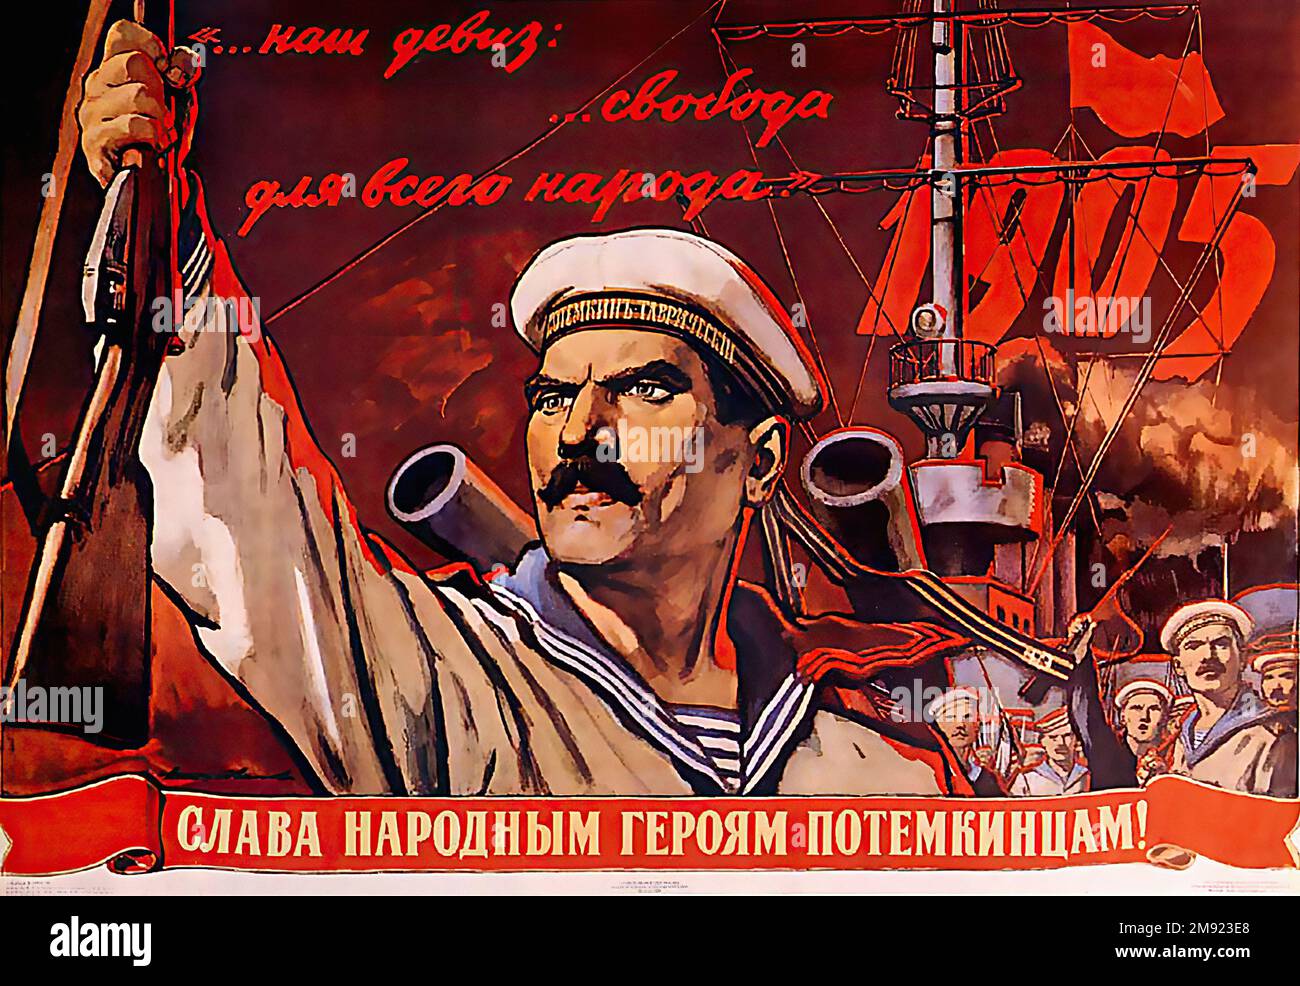 1925 - 'Potemkin corazzata' - URSS (tradotto dal russo) - poster di propaganda sovietica vintage dell'URSS Foto Stock